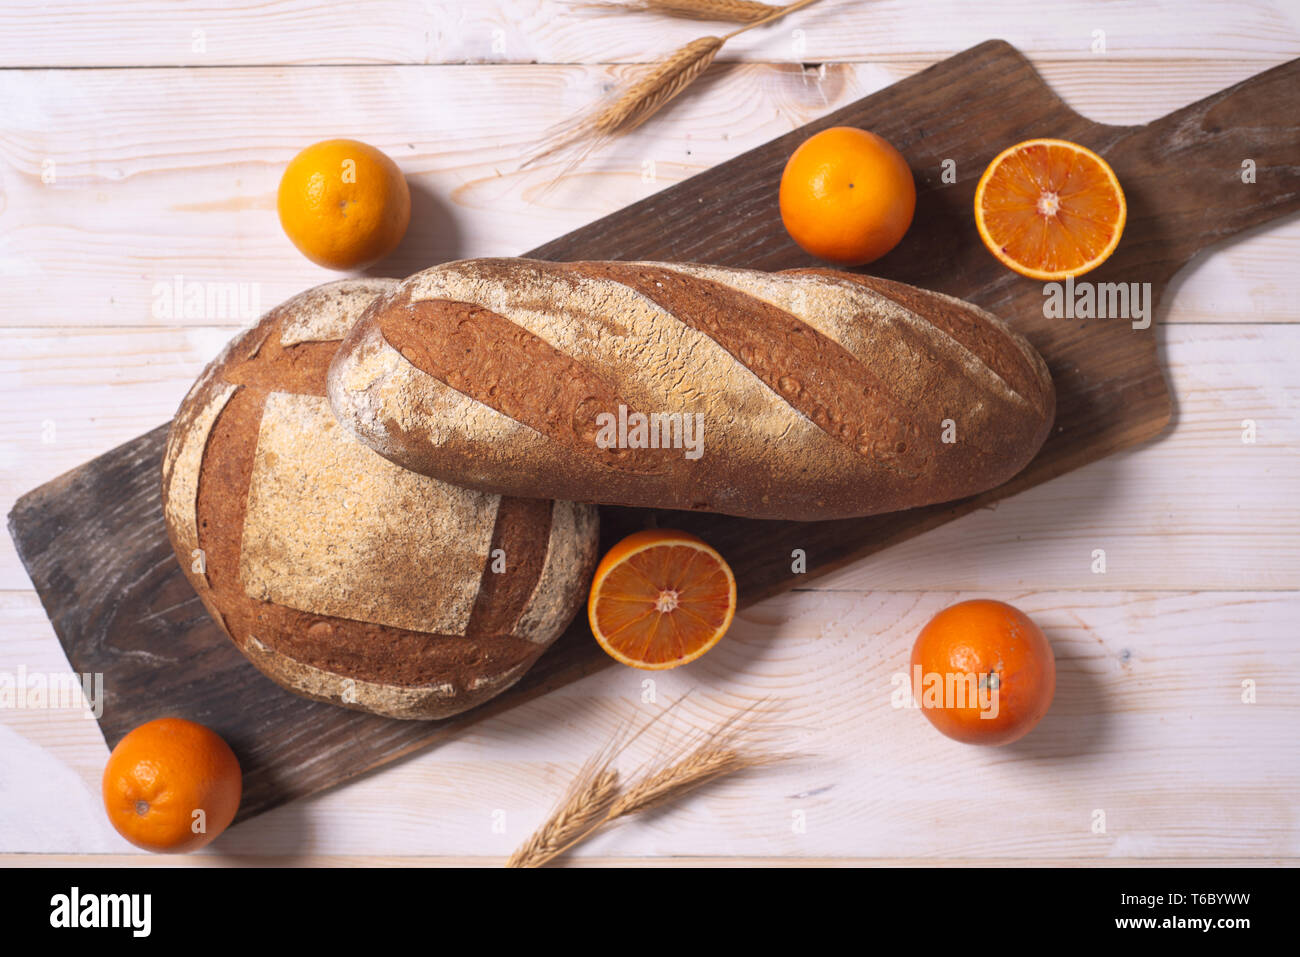 Nouveau concept durable et nutritive du pain italien par département de la recherche, faite avec des fibres d'agrumes obtenue à partir de déchets de la transformation des oranges Banque D'Images